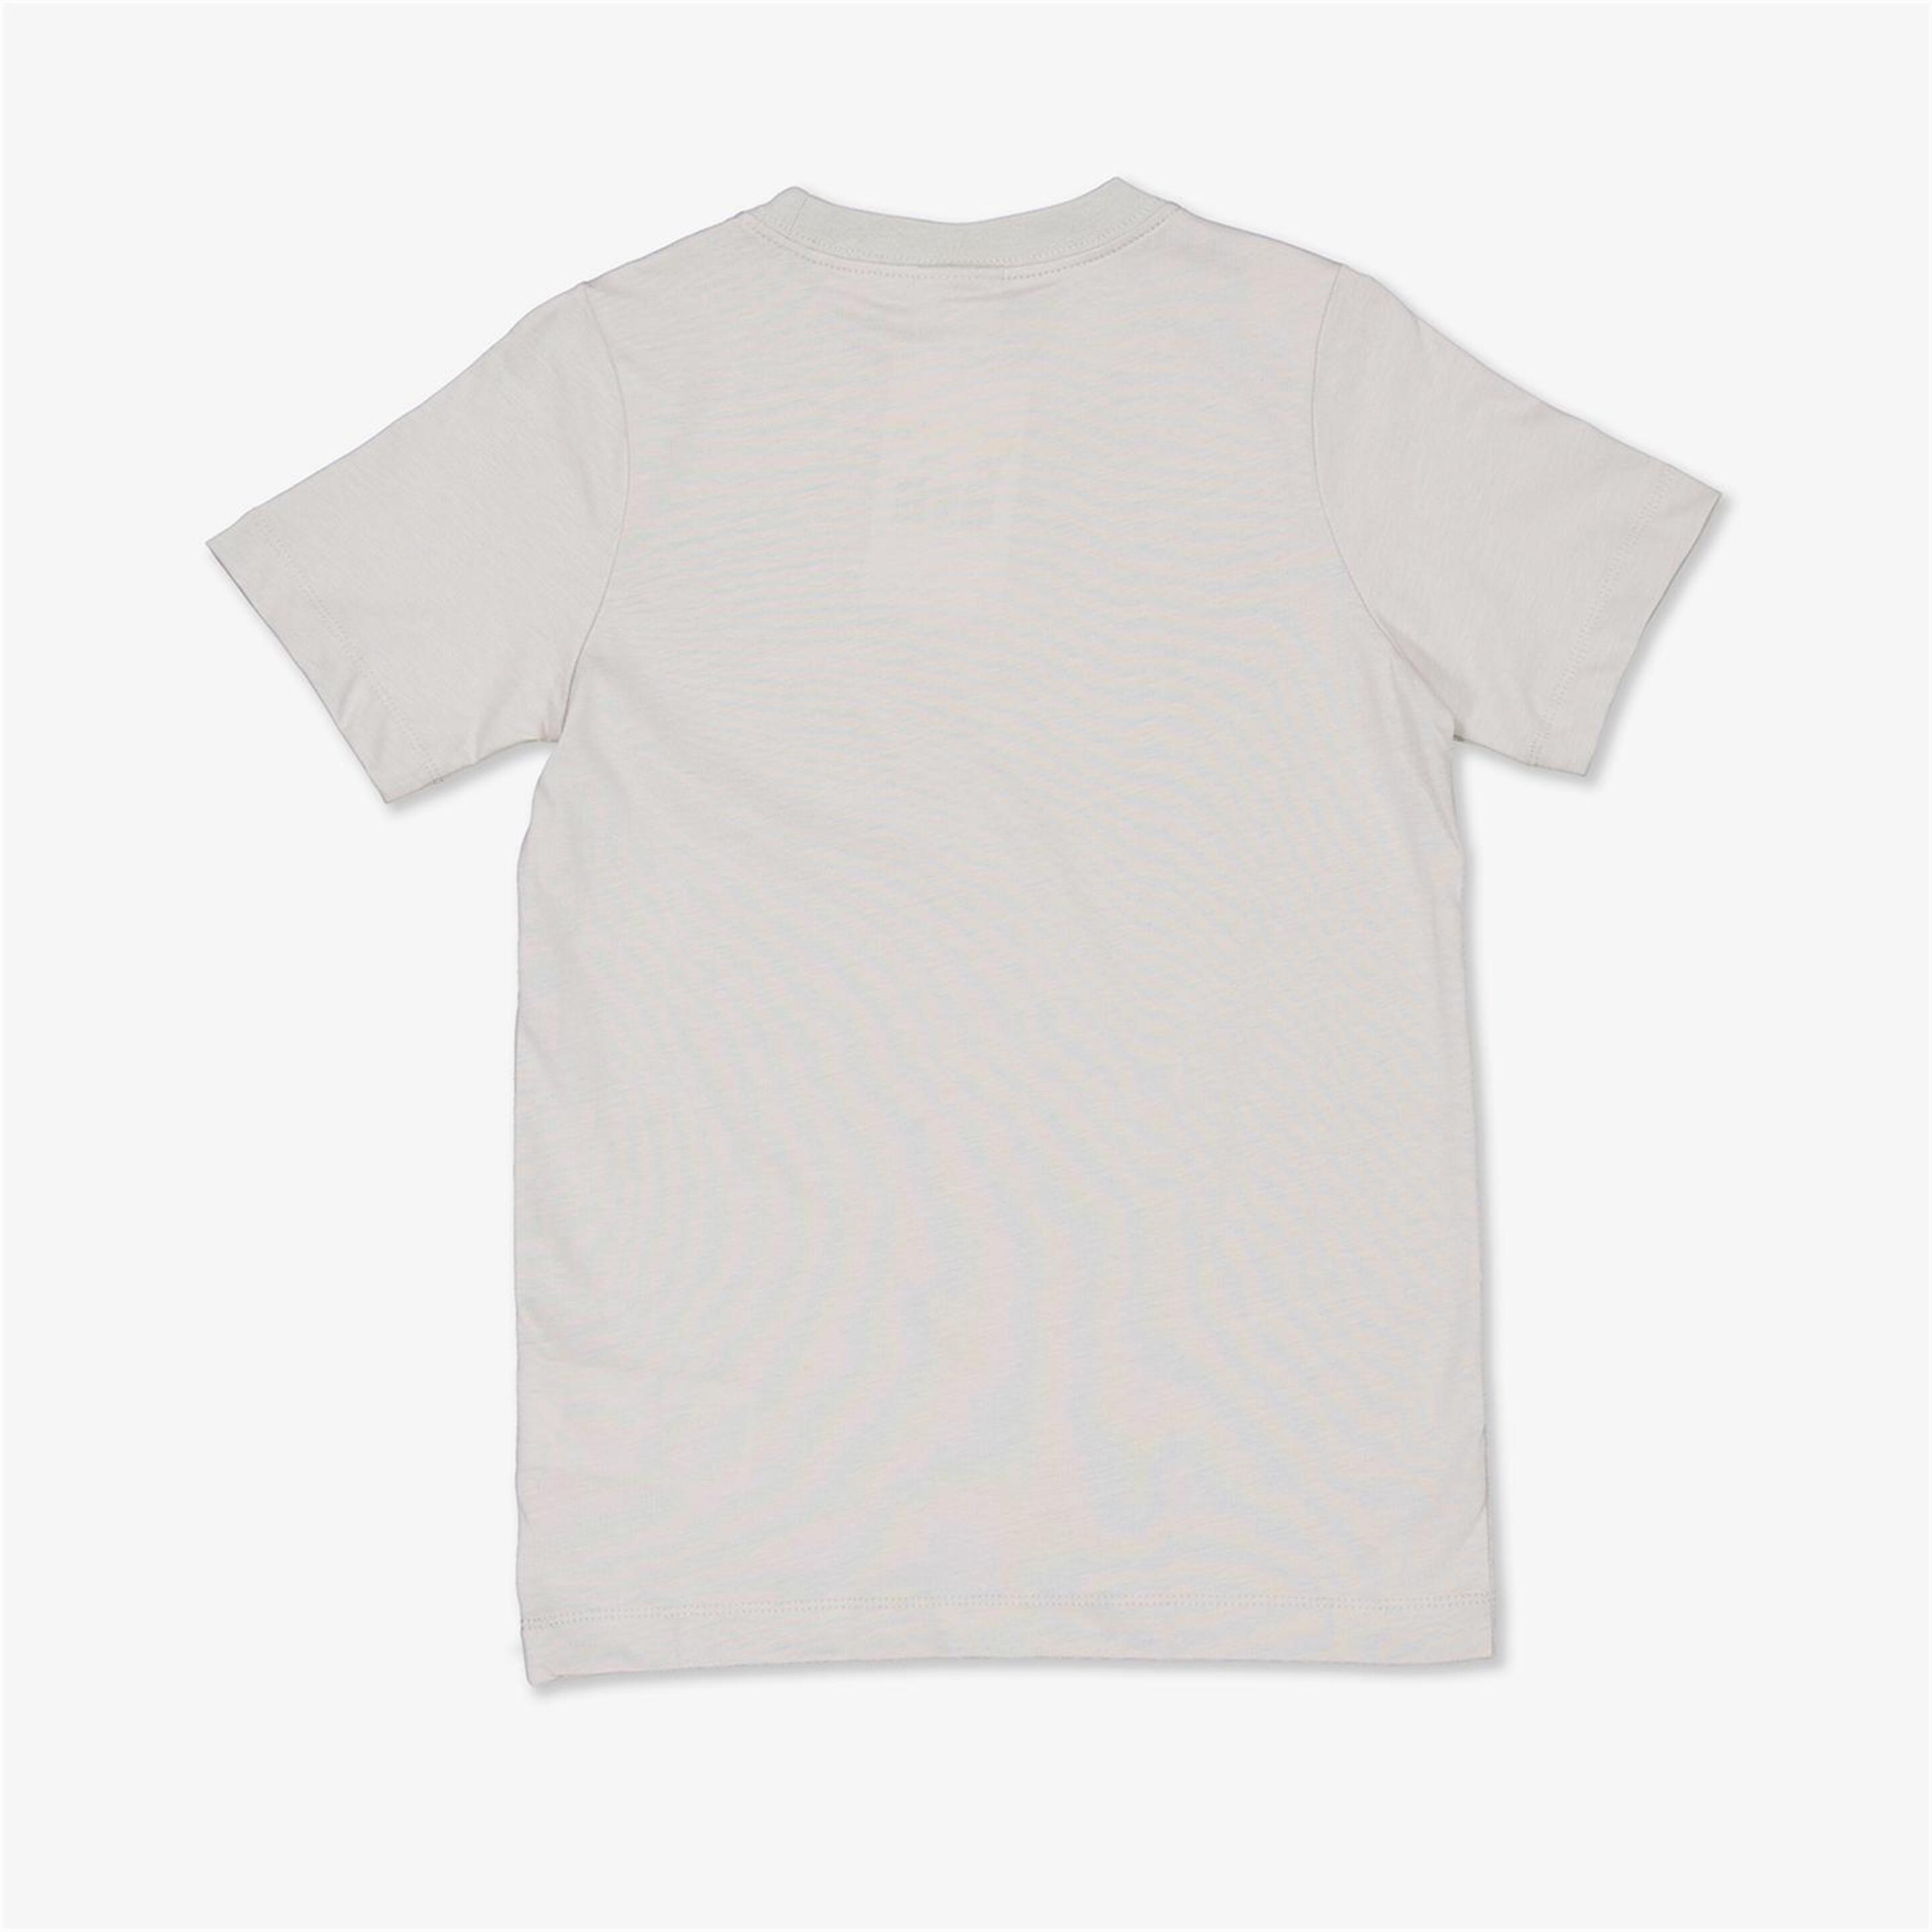 Camiseta Nike - Gris - Camiseta Niño